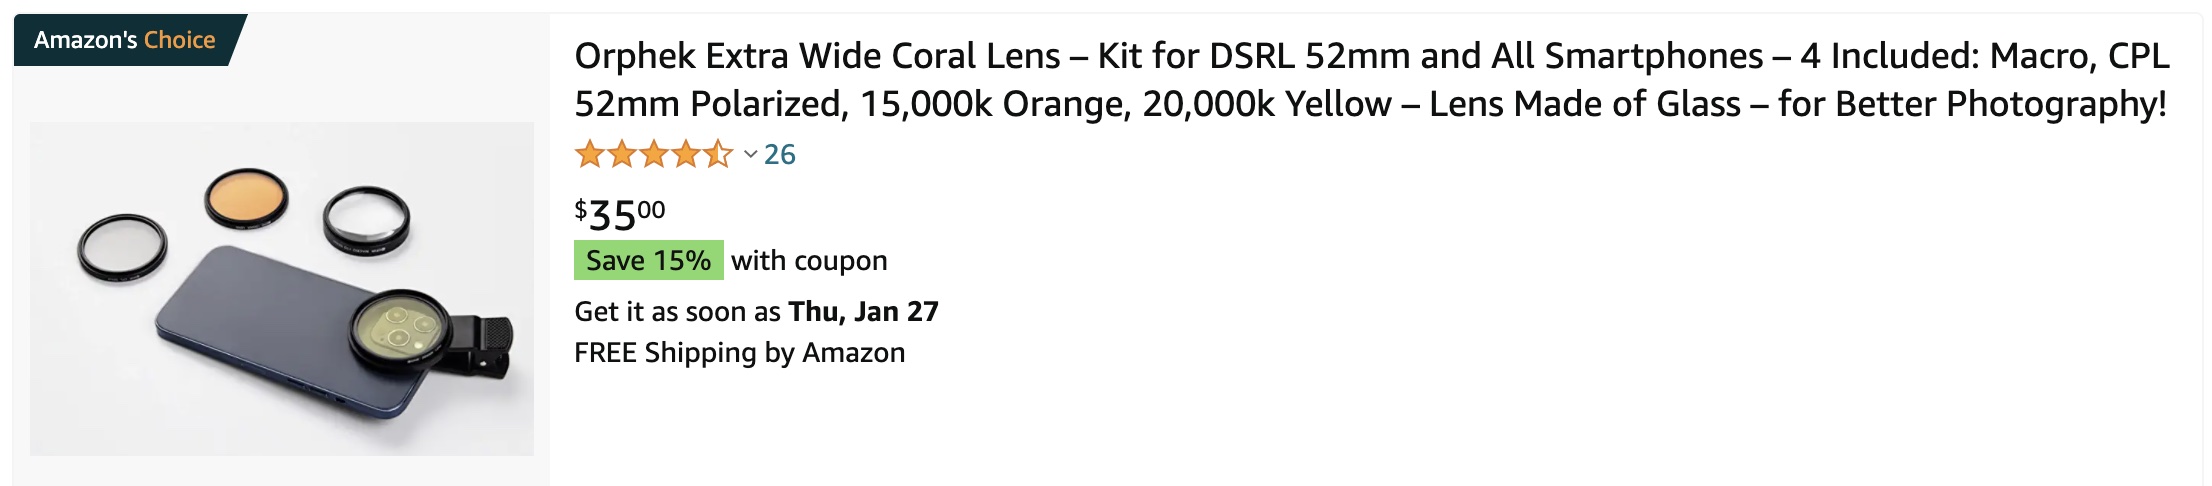 acheter sur amazon Orphek Extra Wide Coral Lens